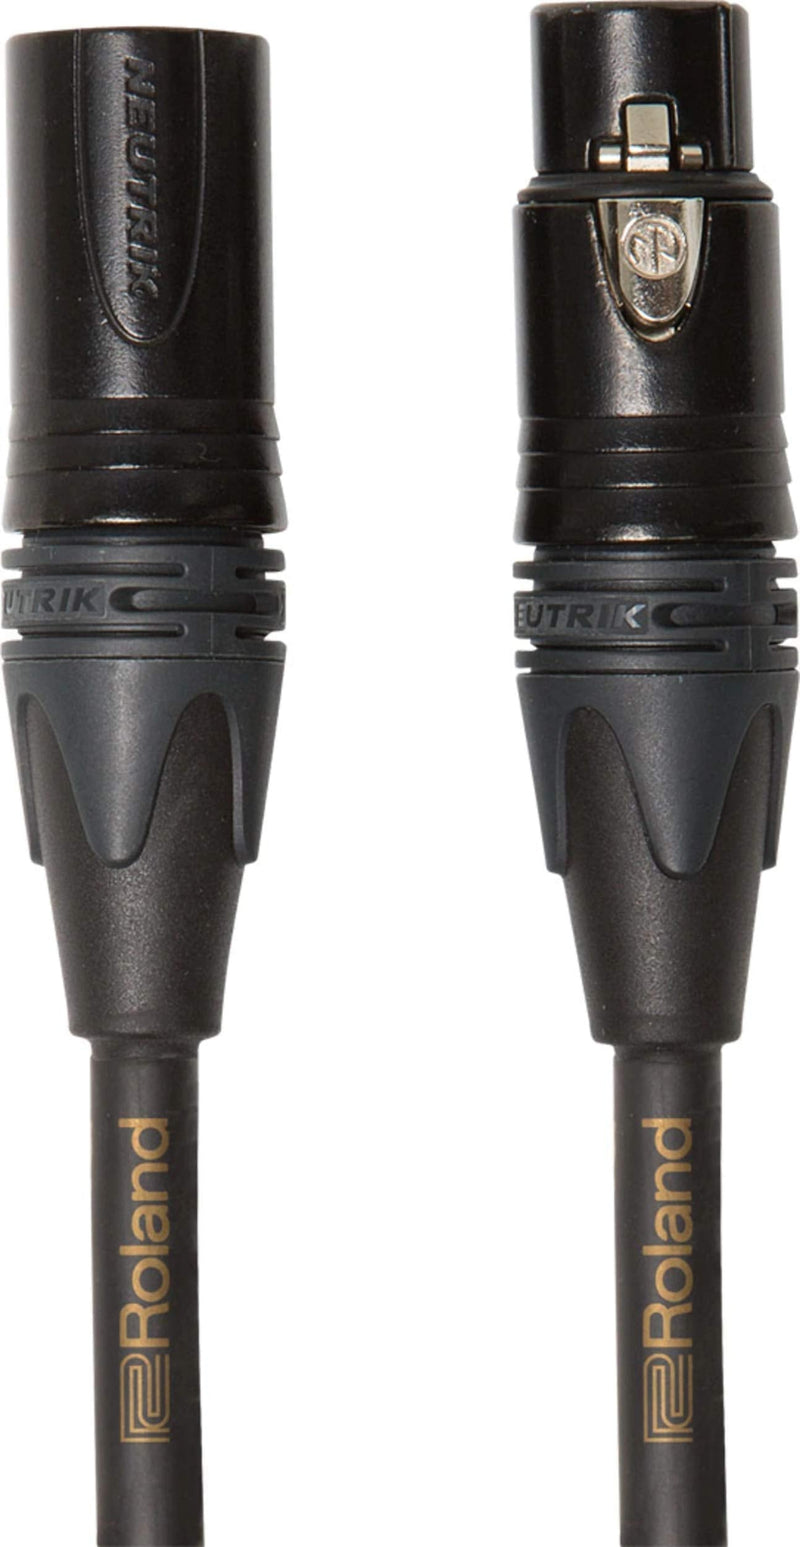  [AUSTRALIA] - Roland Gold Series Neutrik XLR Microphone Cable, 15-Feet 15 feet